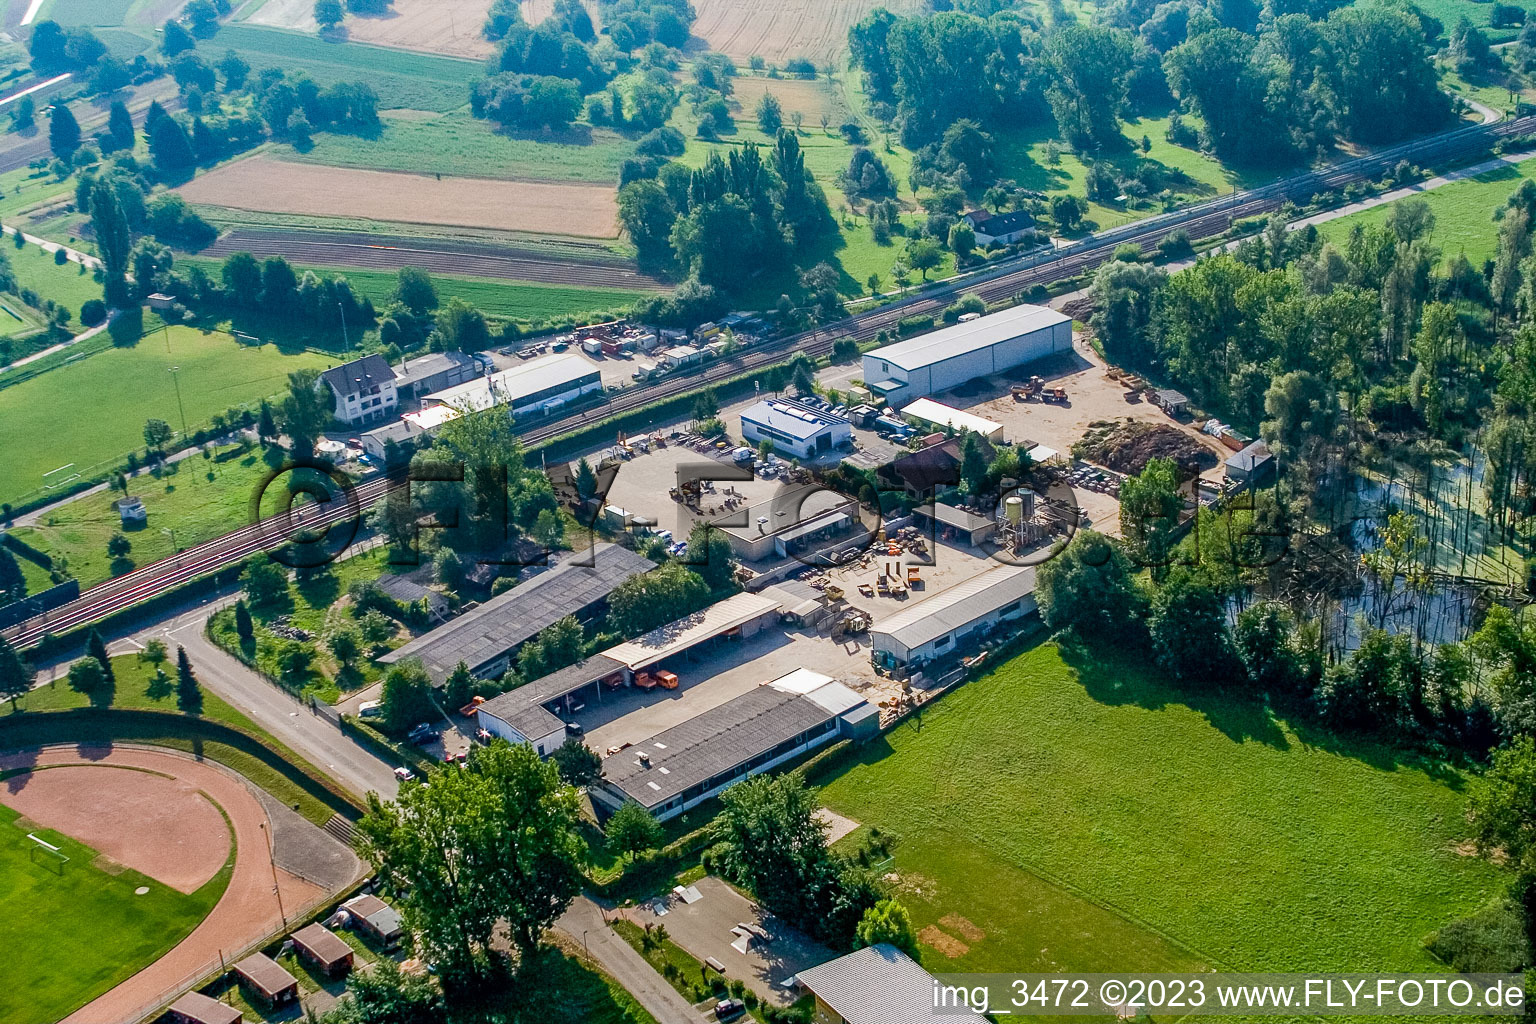 Vue aérienne de Centre de recyclage à le quartier Berghausen in Pfinztal dans le département Bade-Wurtemberg, Allemagne